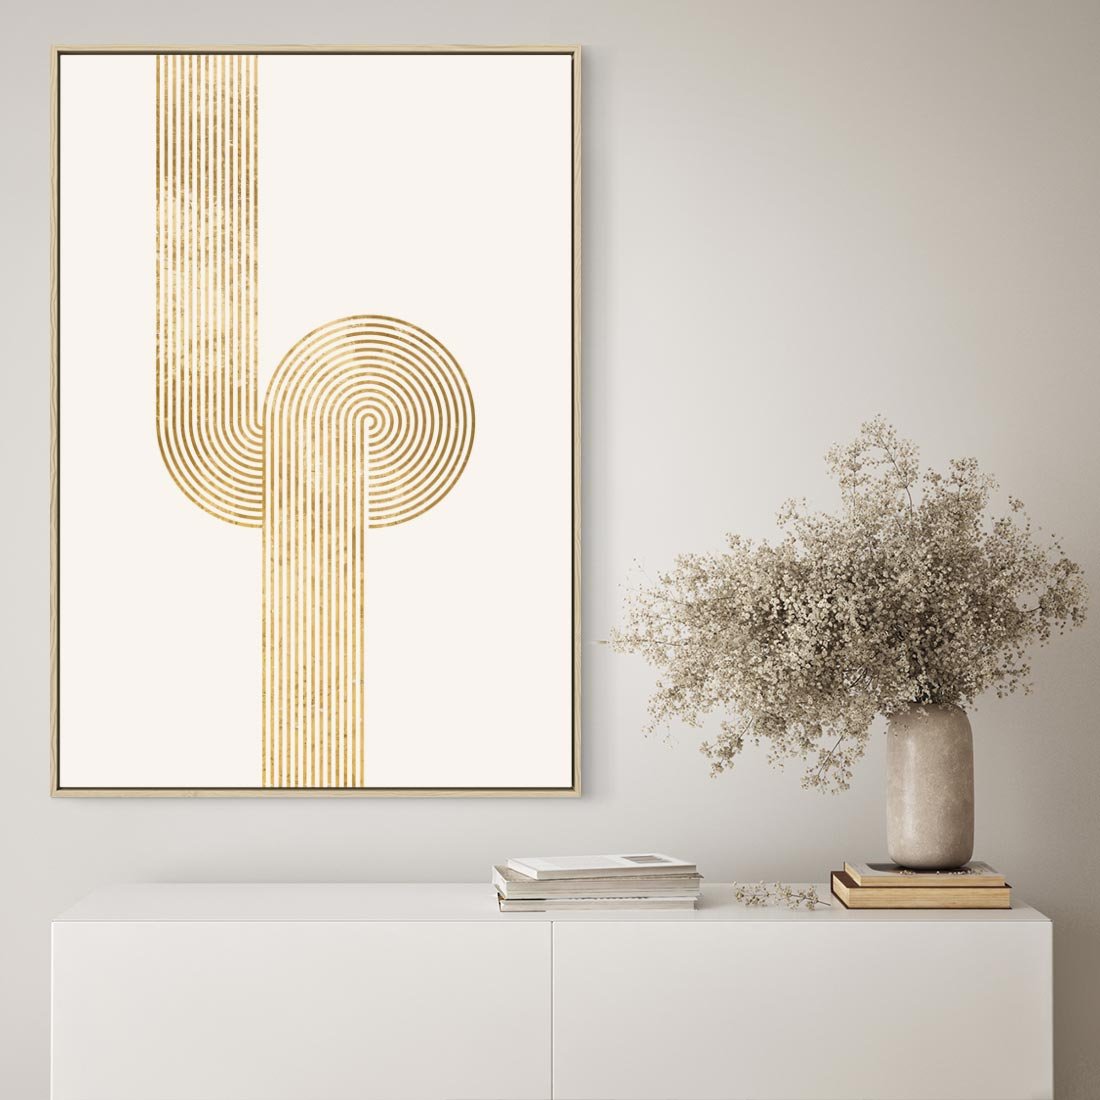 Obraz w ramie 50x70 - Podróżne Kształty - geometryczne linie w złotym kolorze, minimalizm - rama drewno